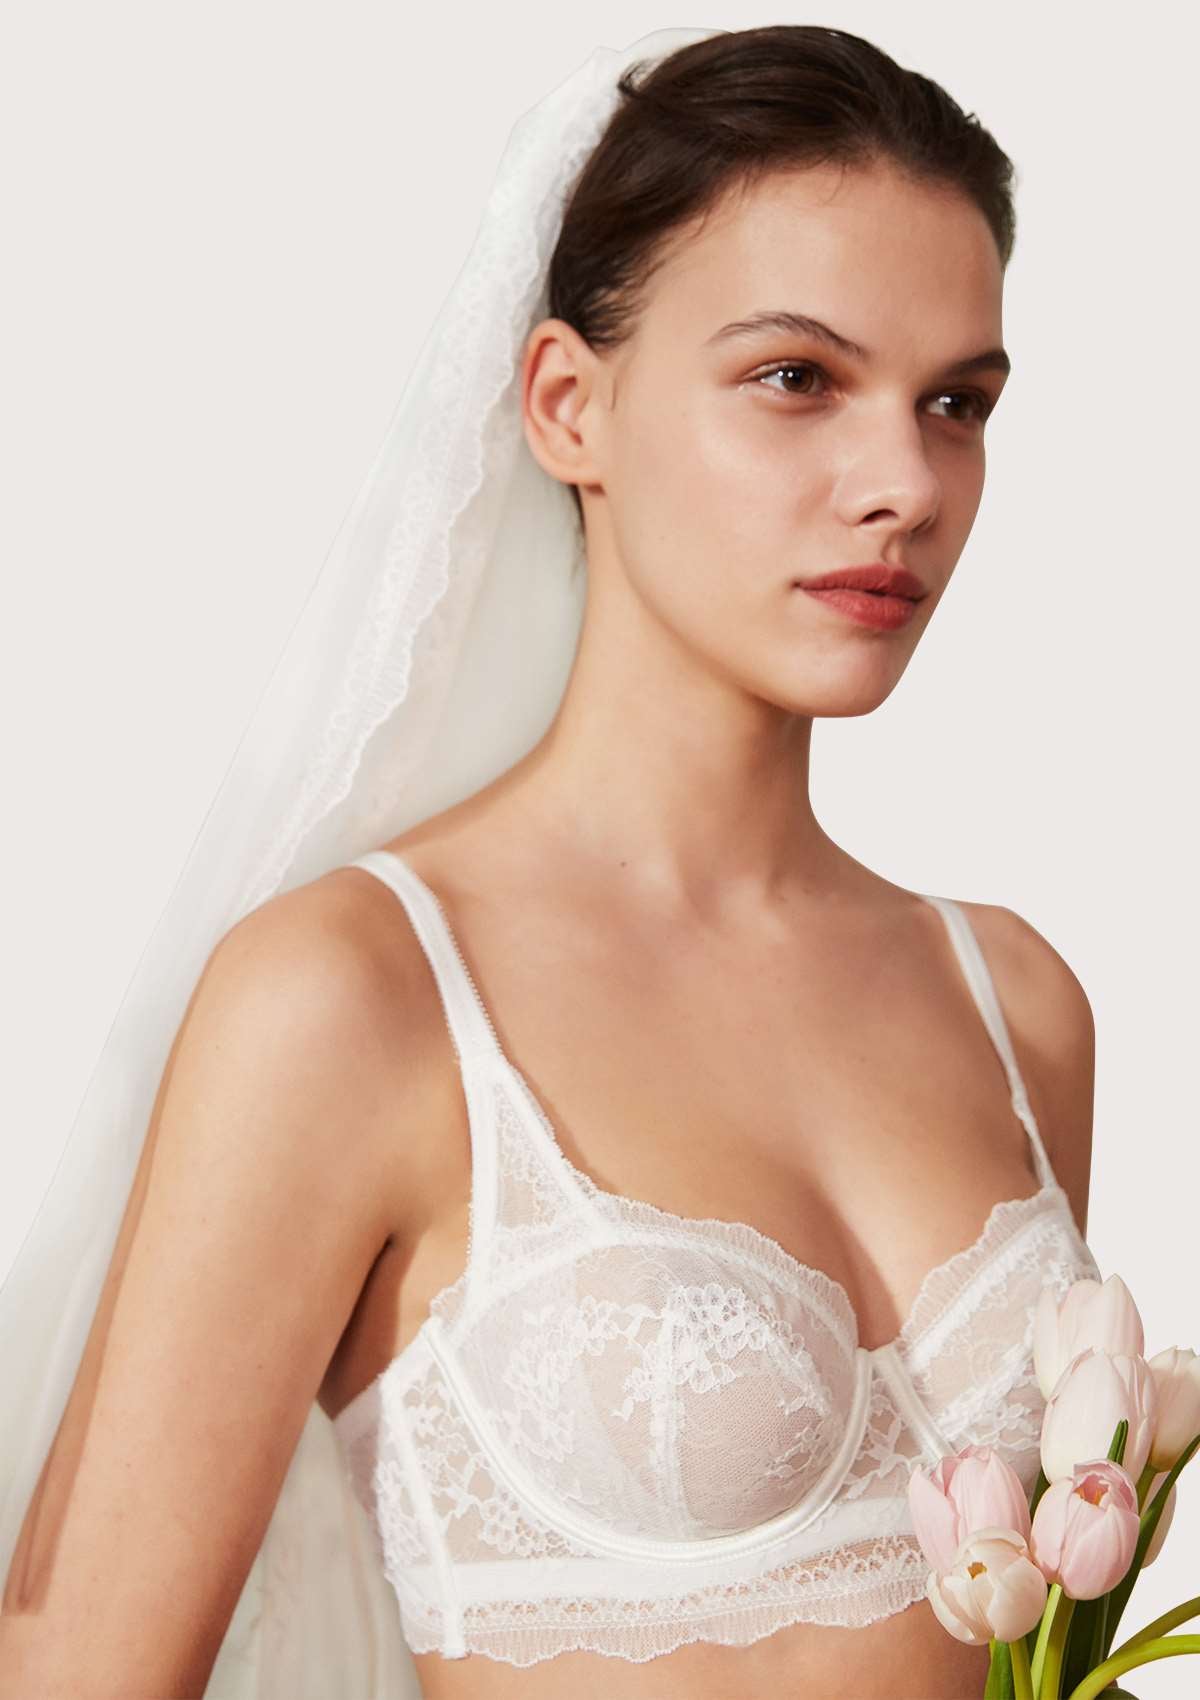 HSIA Floral Lace Unlined Bridal Romantic Balconette Bra Panty Set  - White / 38 / D